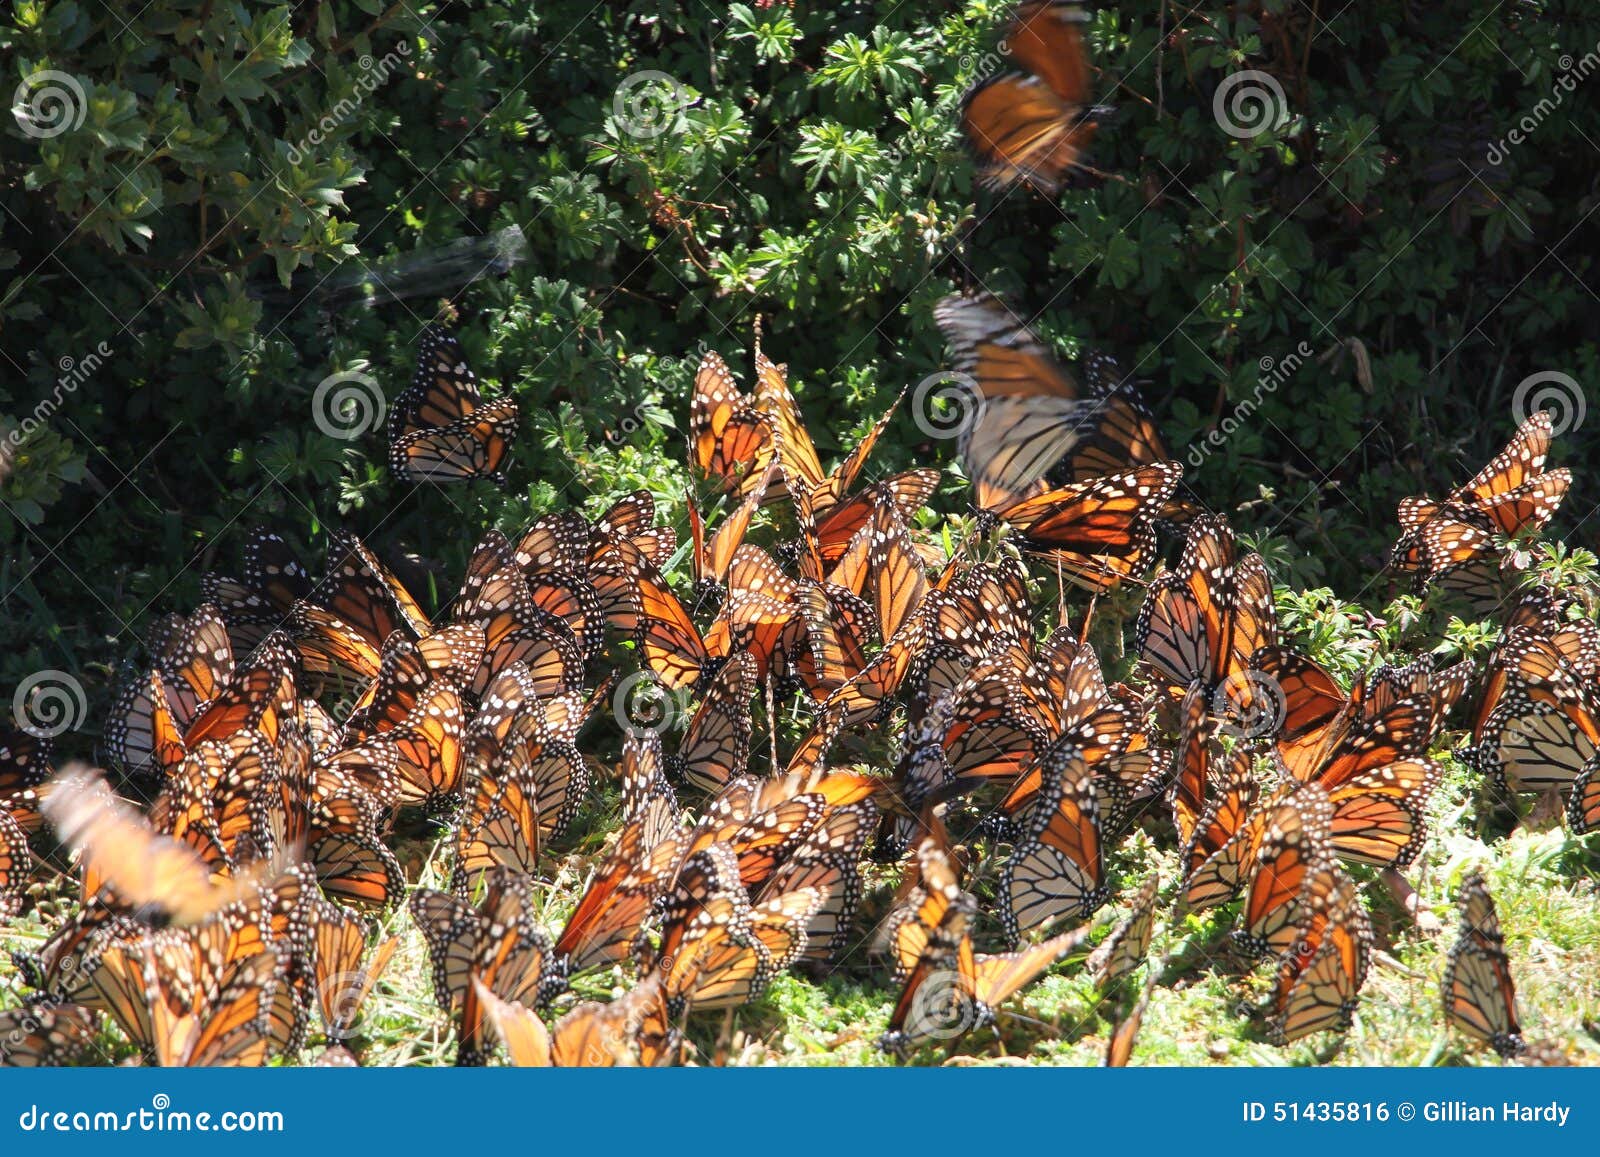 monarch butterflies fly